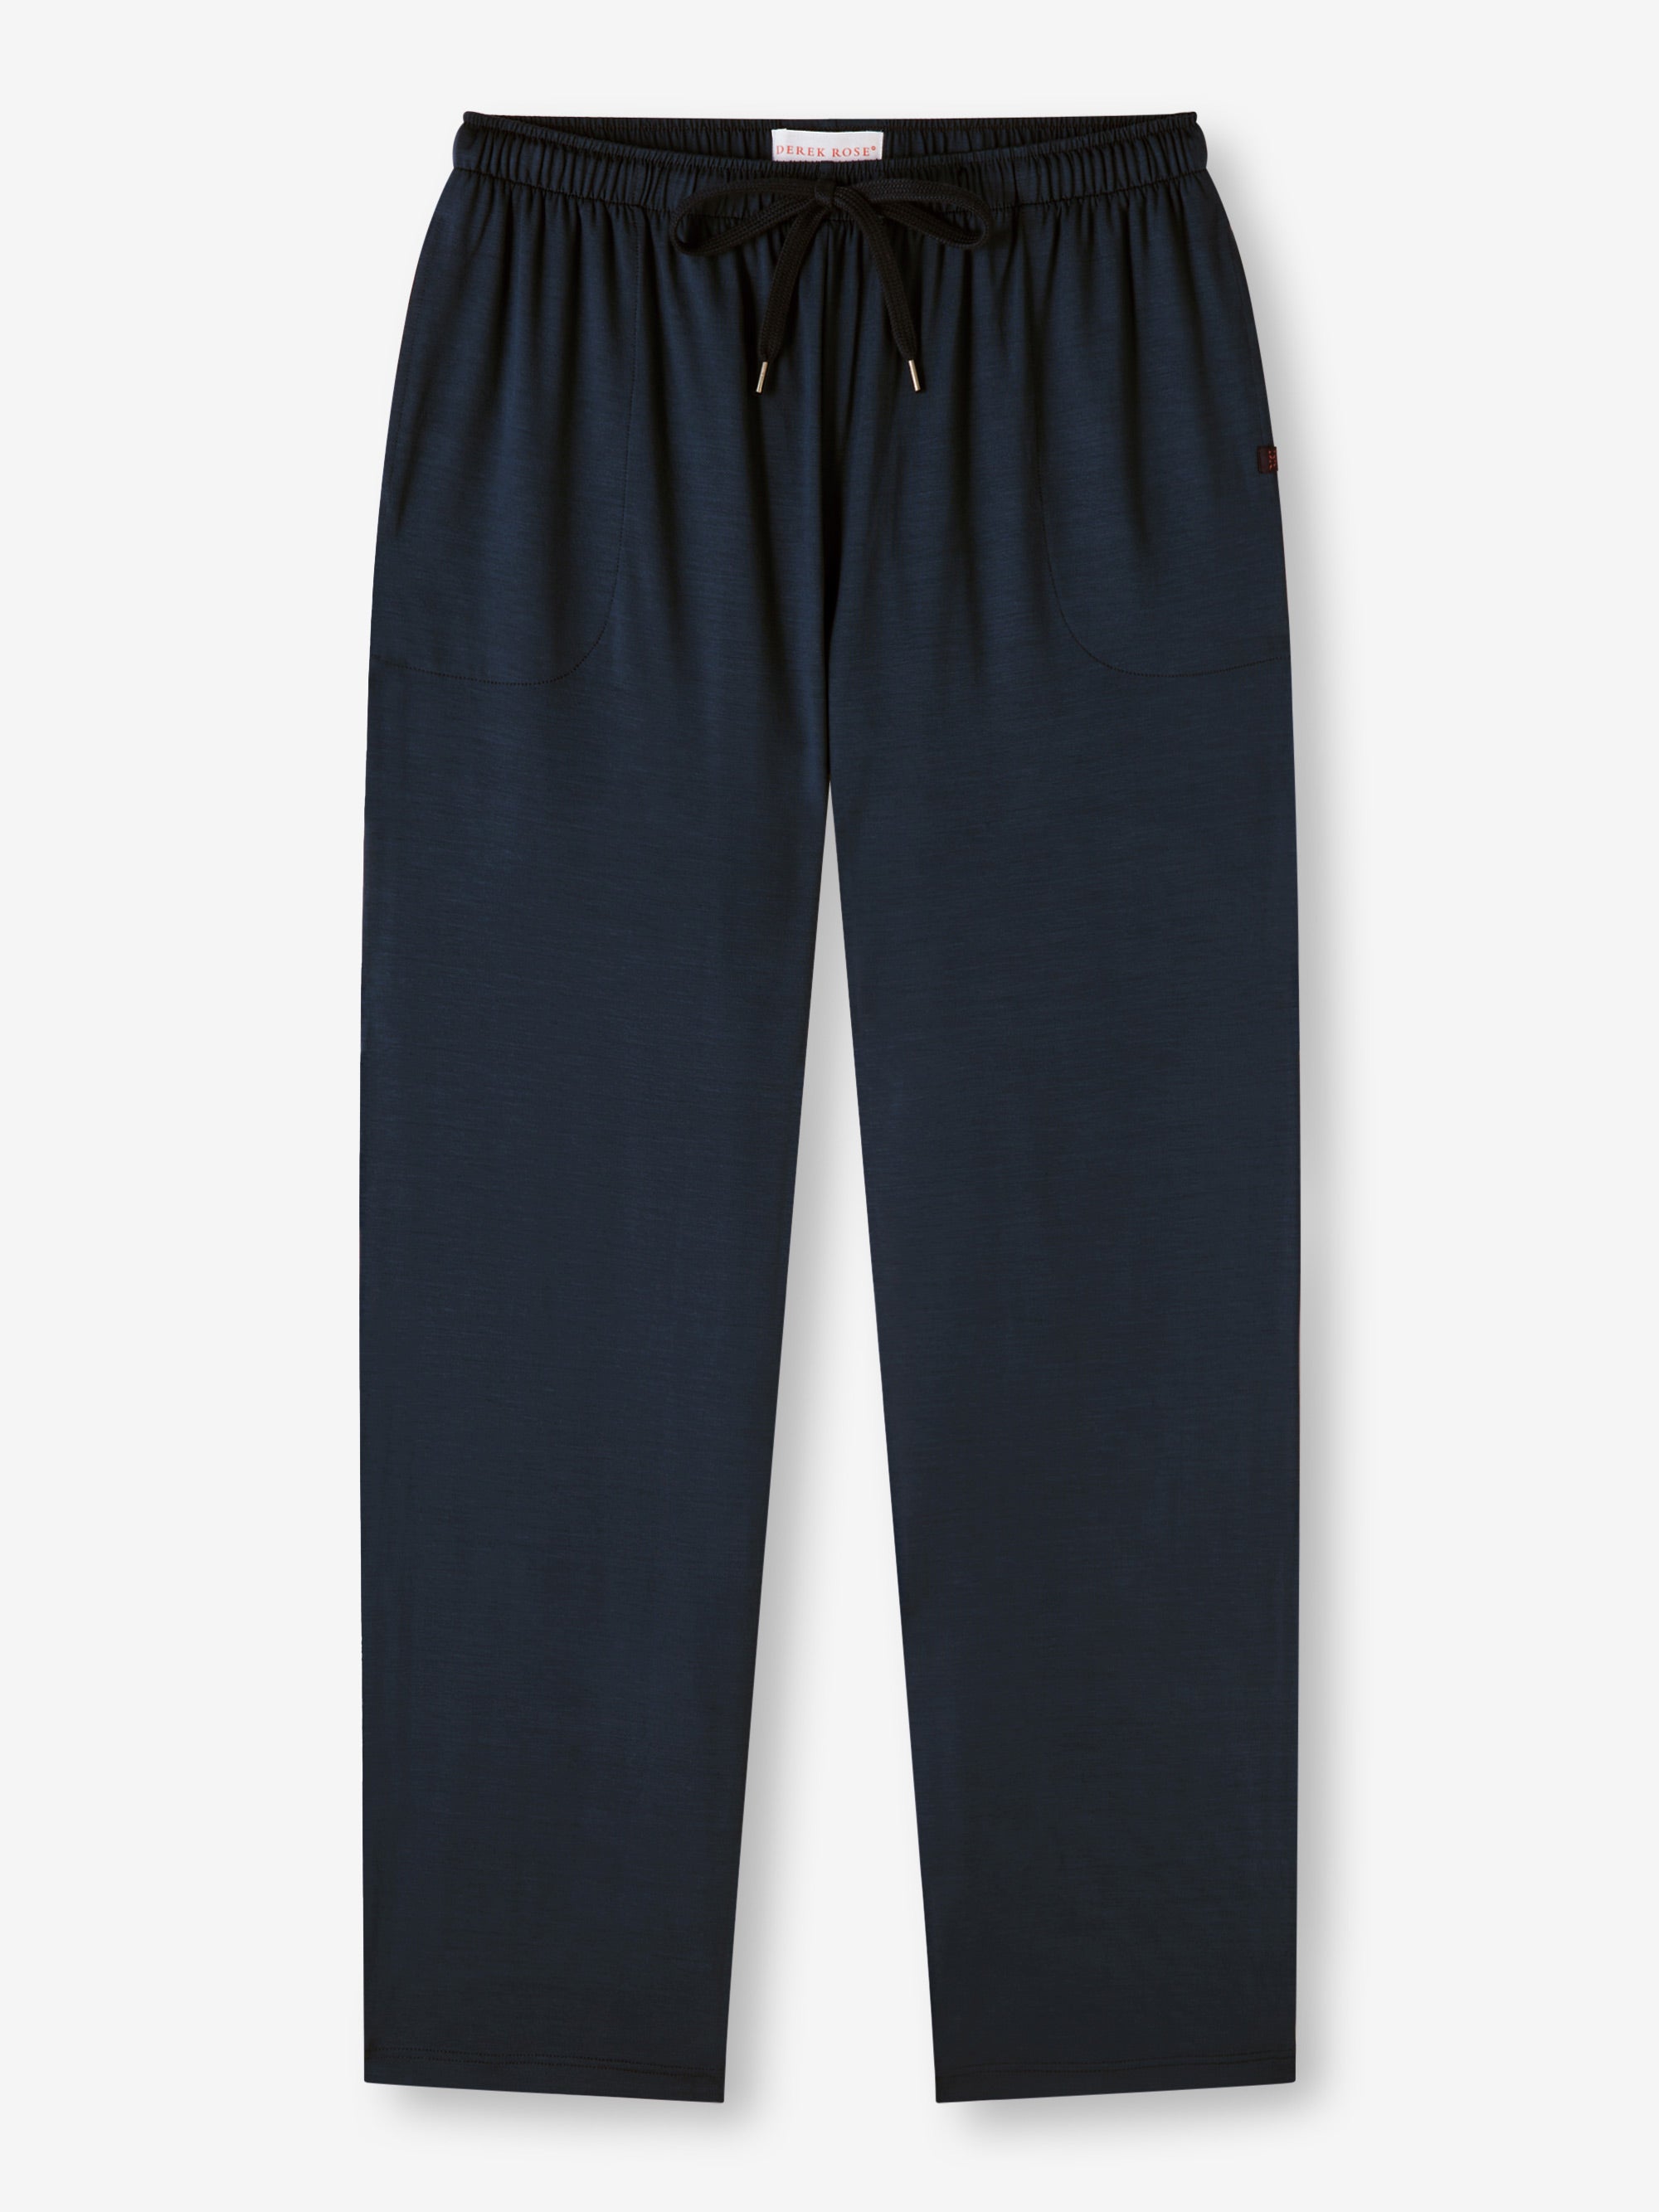 Men's Lounge Pants, Sleepwear & Loungewear Online Australia